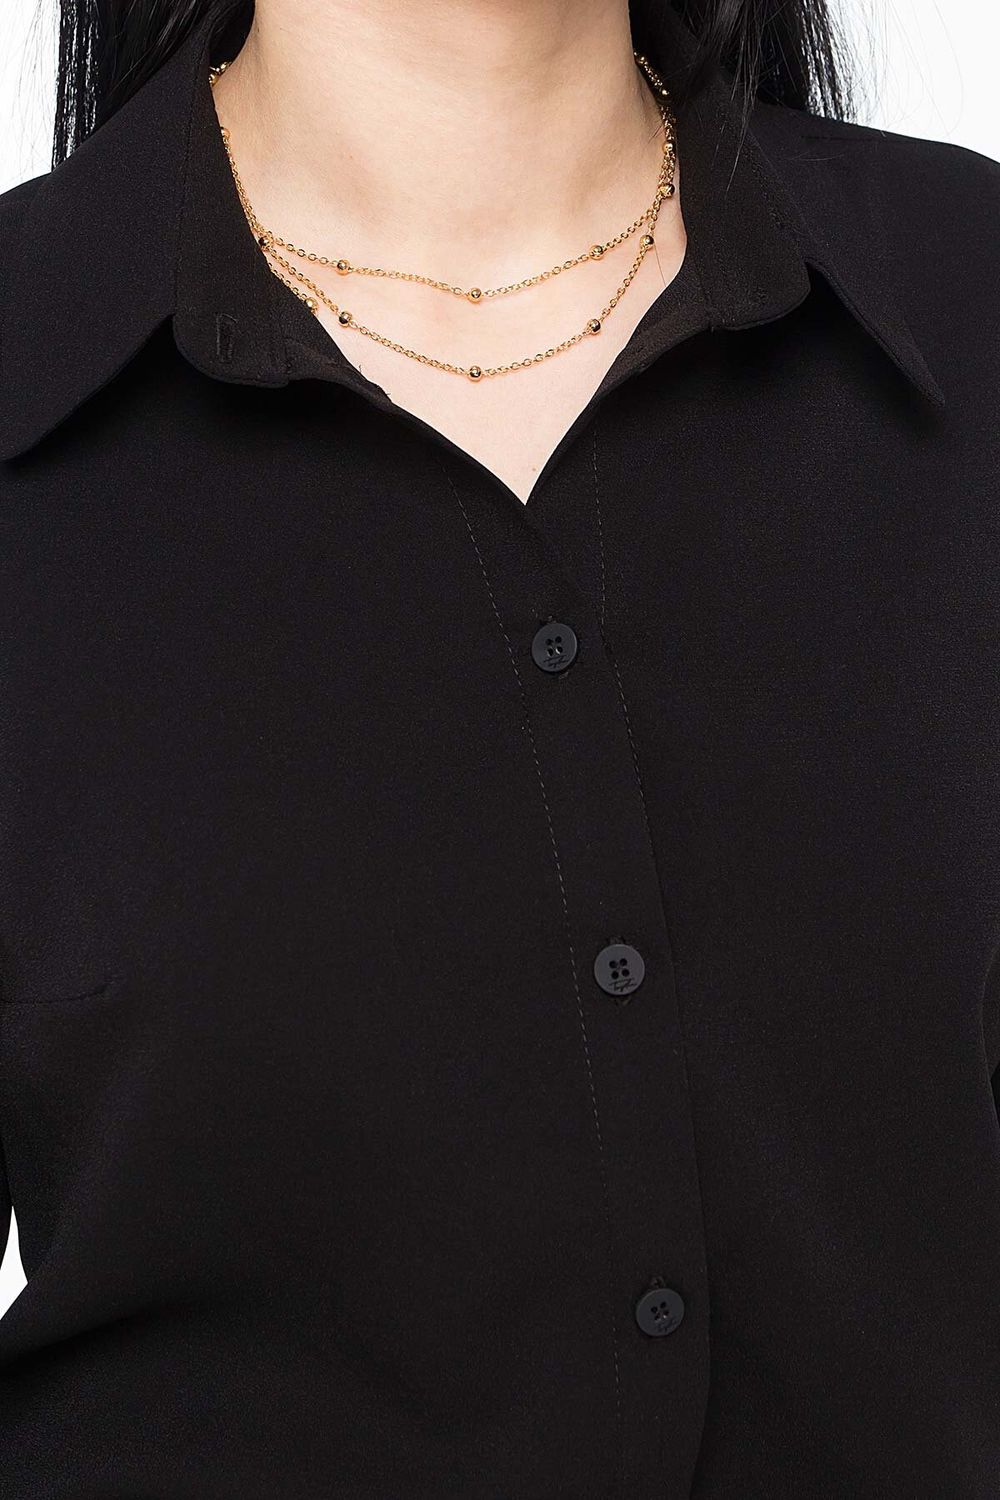 Жіноча класична сорочка чорного кольору - фото